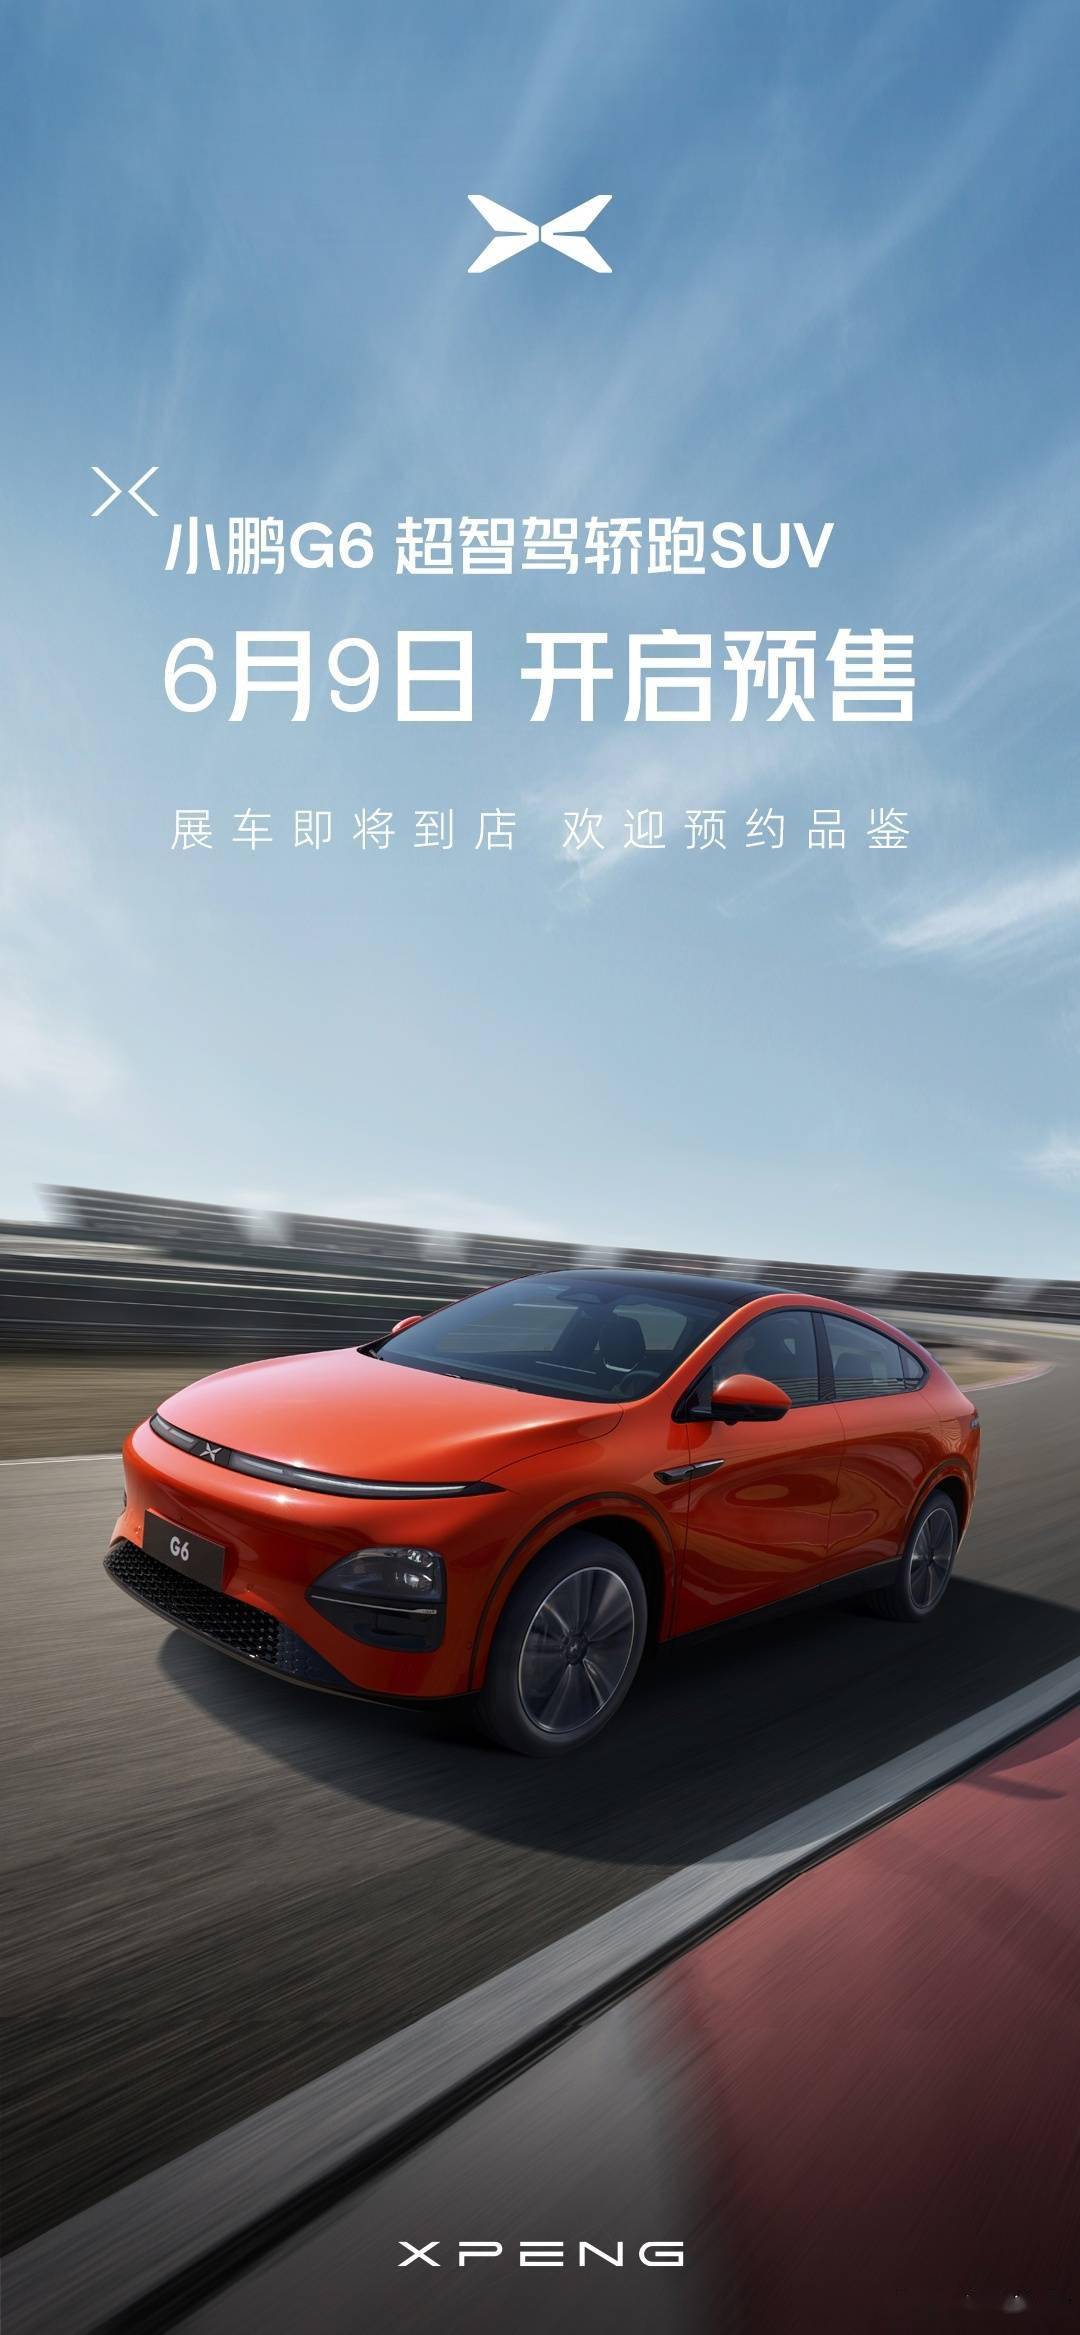 小鹏G6轿跑SUV车型官宣6月9日开启预售 预计售价在20万-30万元区间